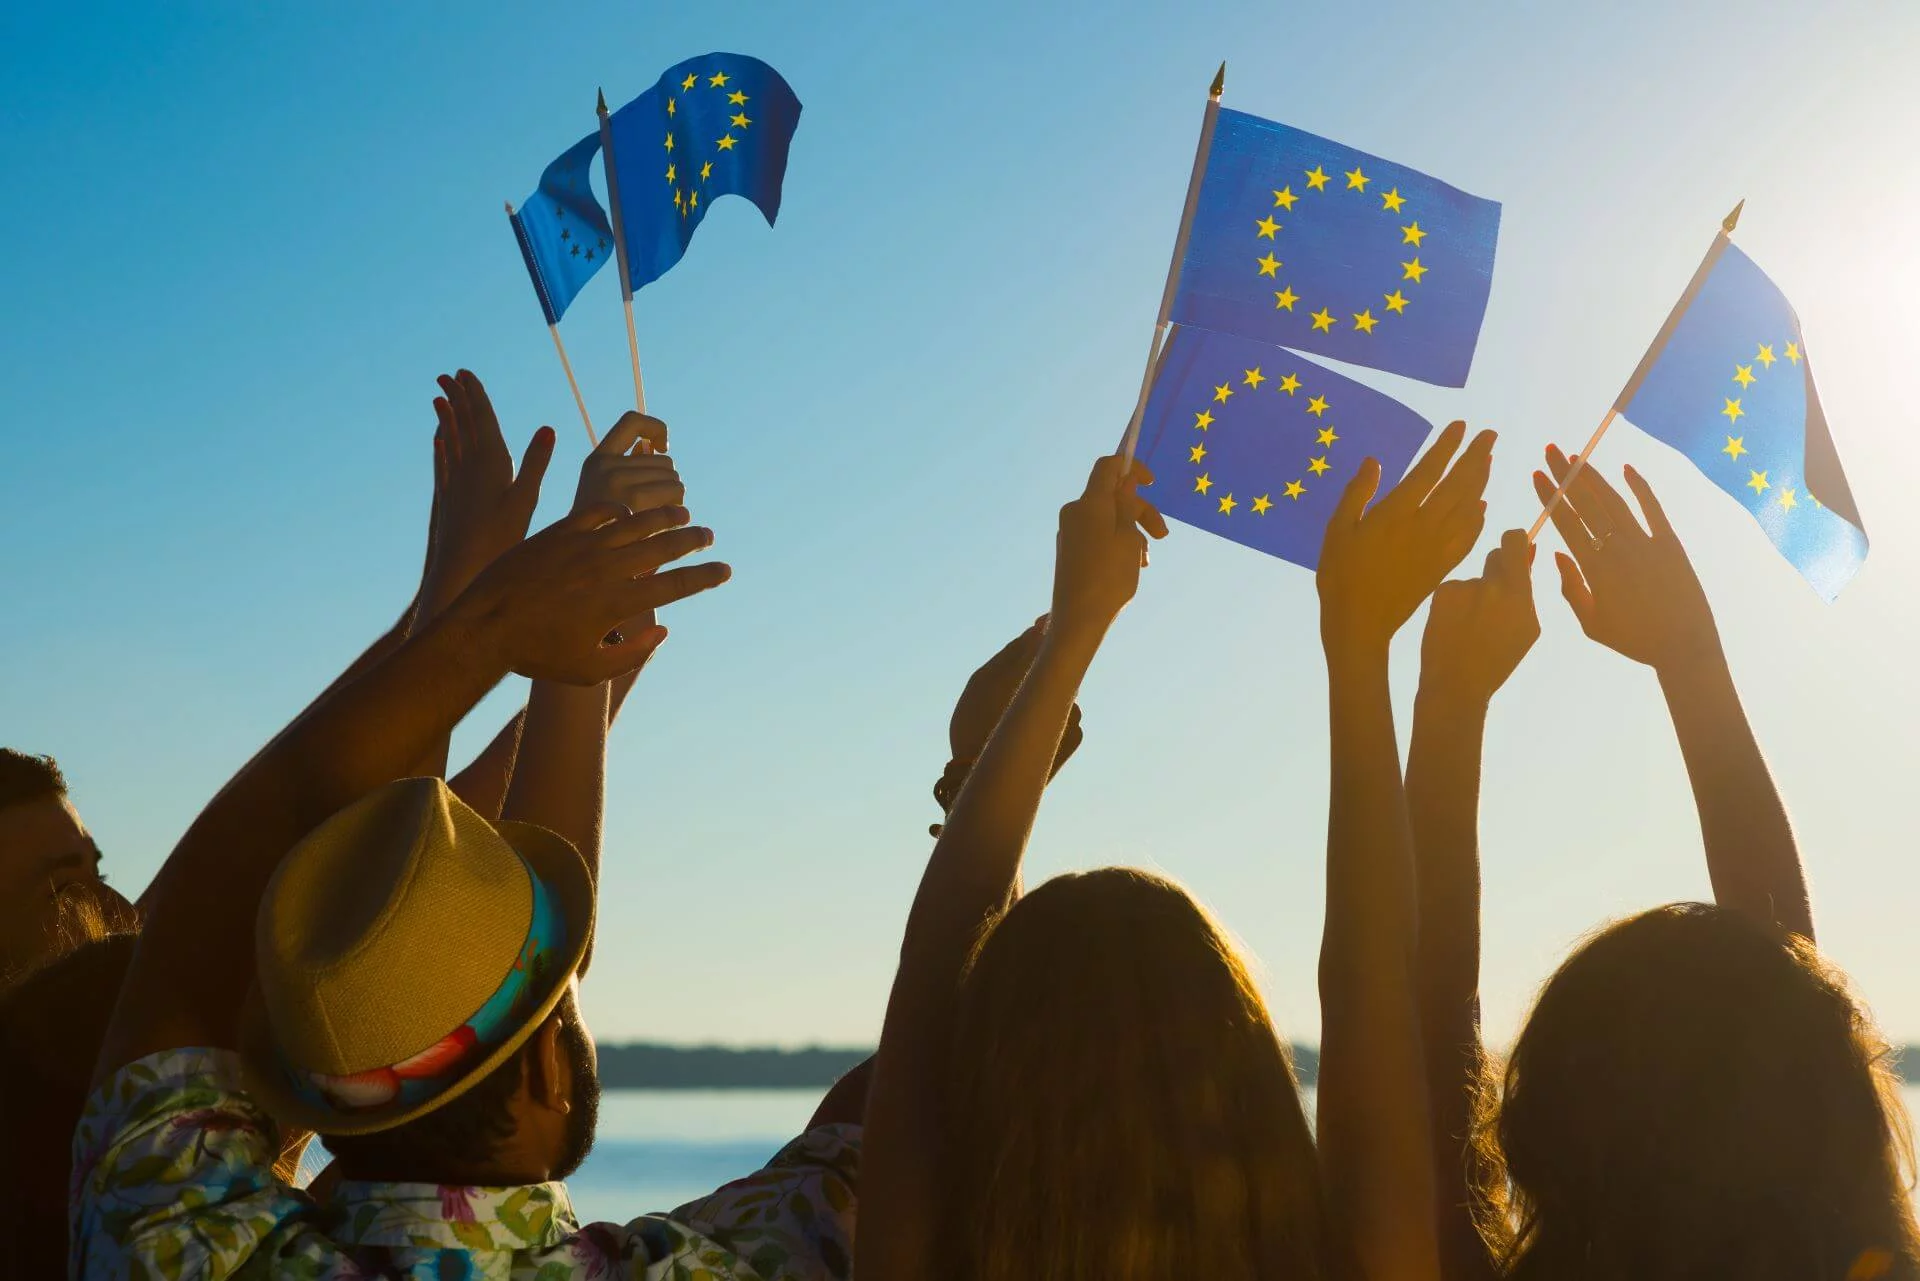 Miksi kannattaa rekisteröidä vaihtoehtoisia verkkotunnuksia? Kuvassa ihmisiä rannalla heiluttamassa EU:n lippuja.